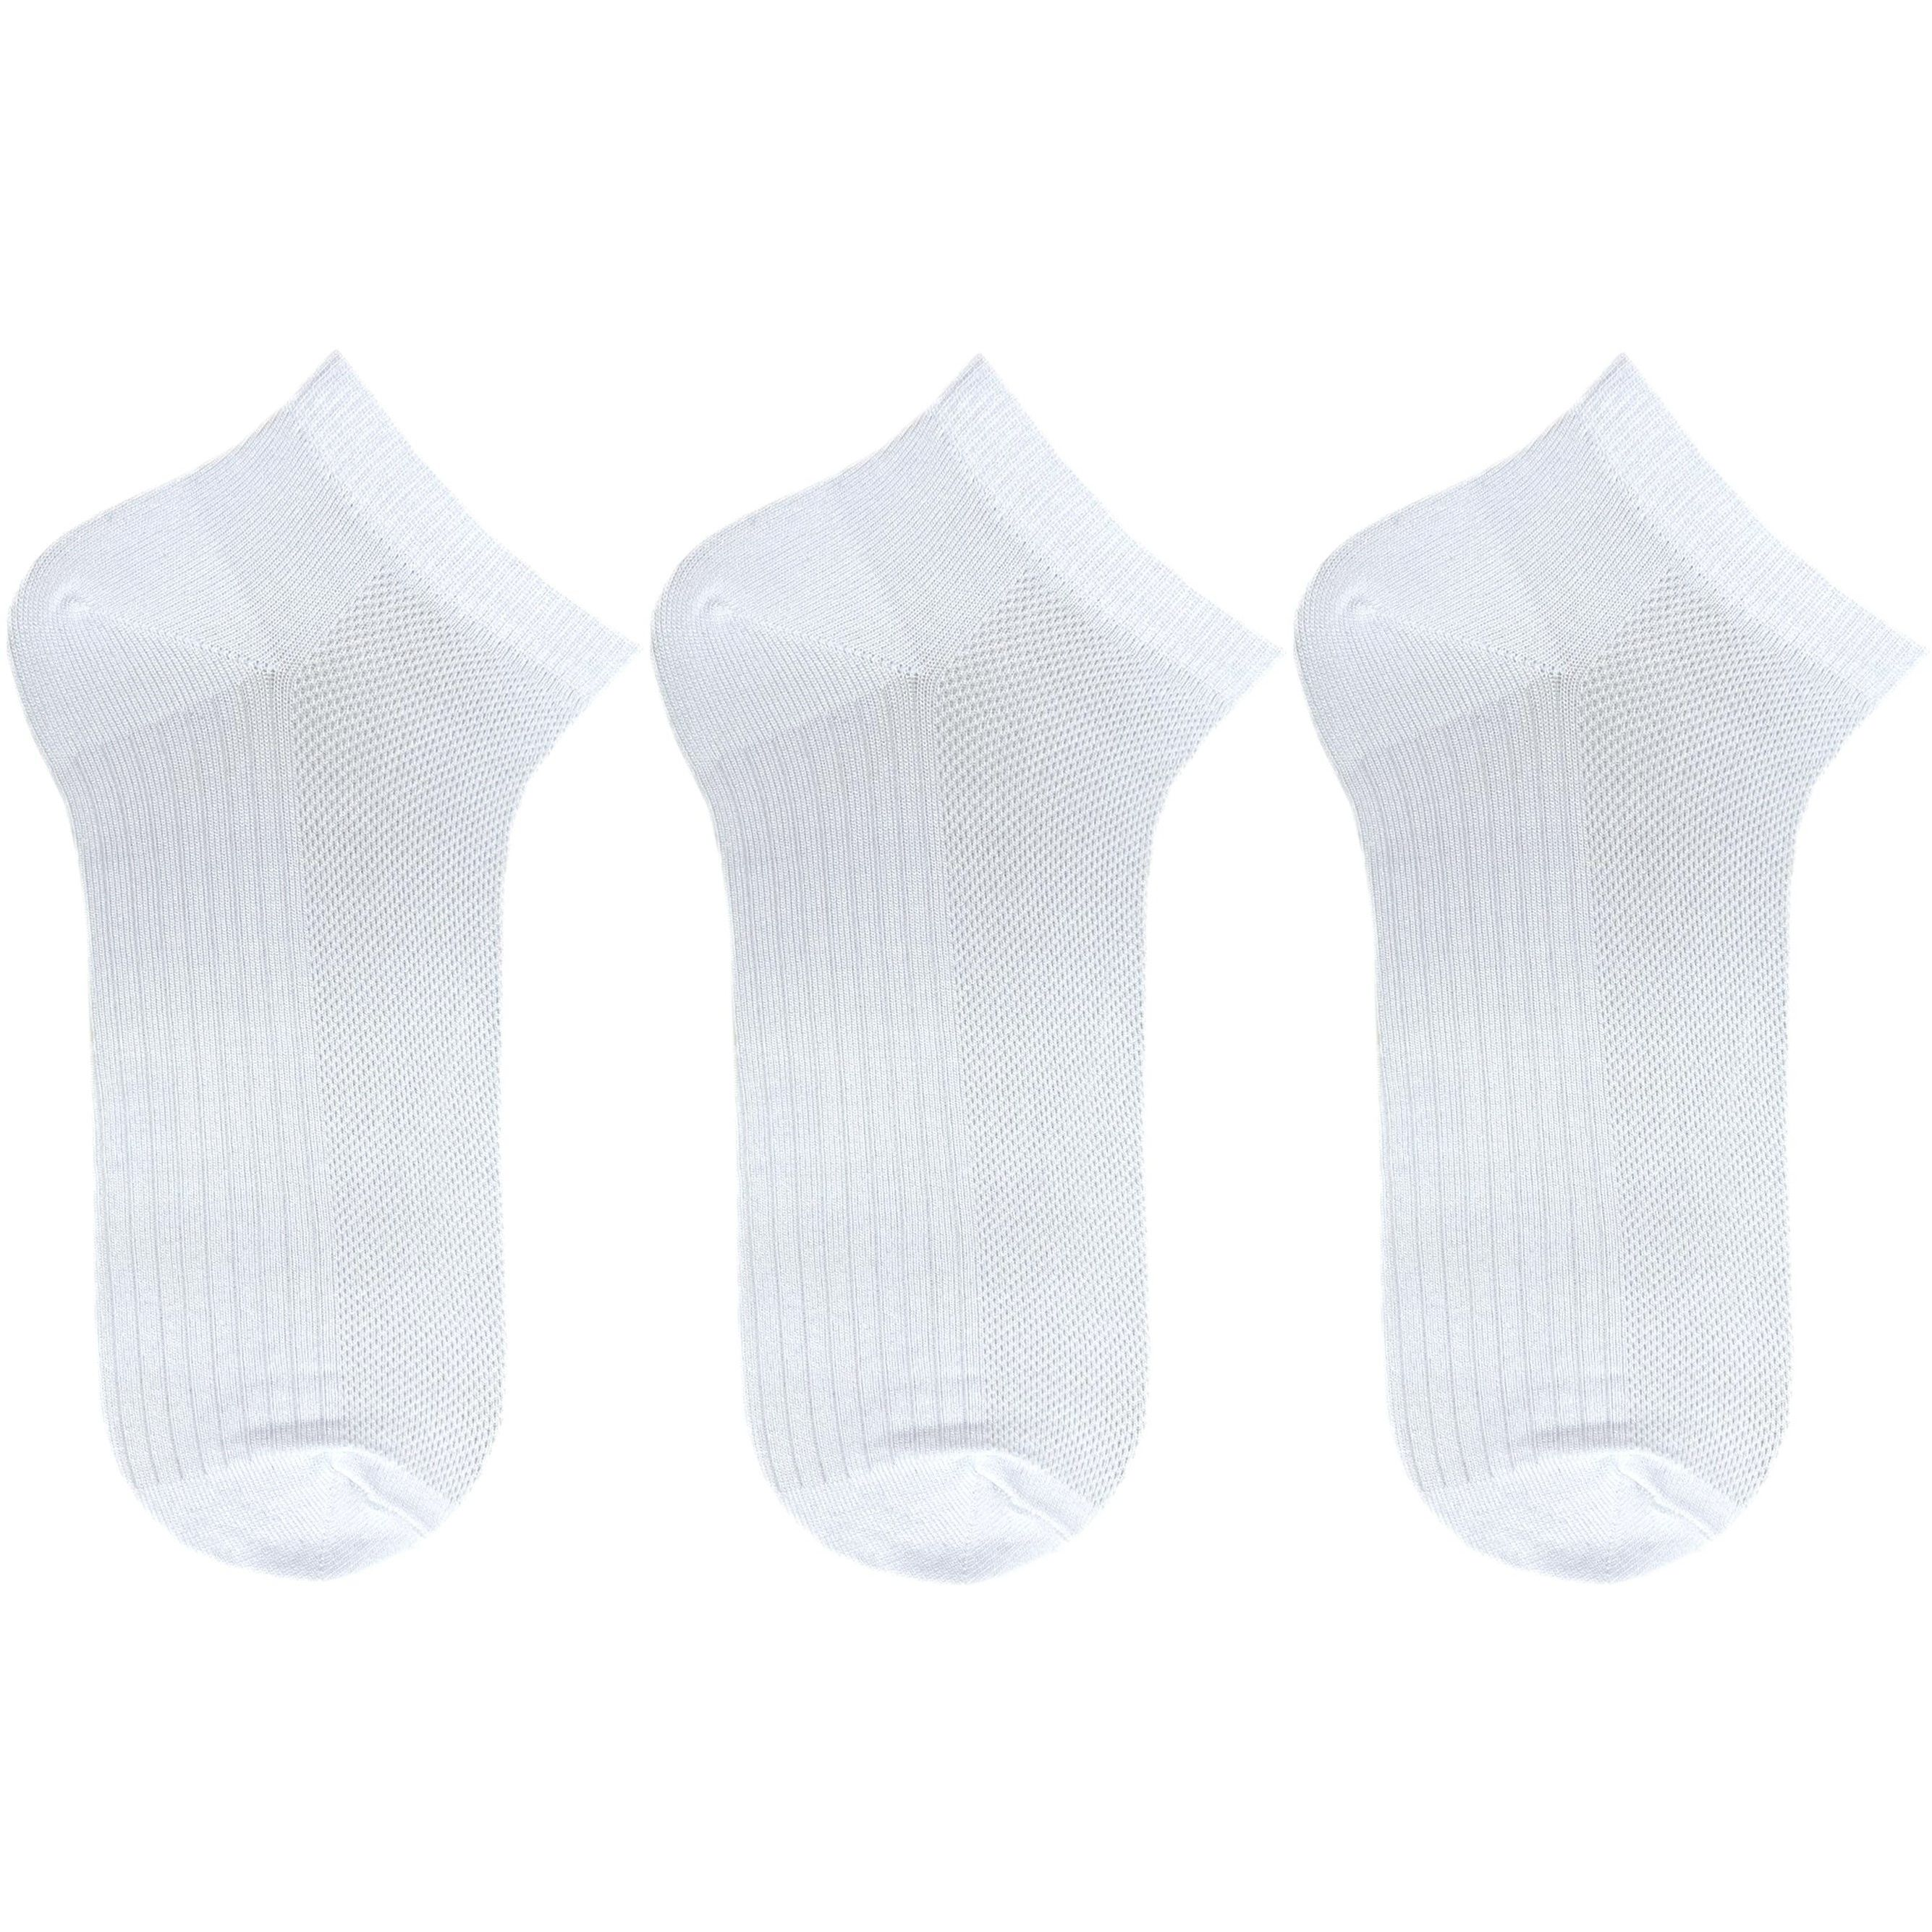 Набор носков женских Premier Socks 36-40 3 пары белые (4820163319261) фото 1